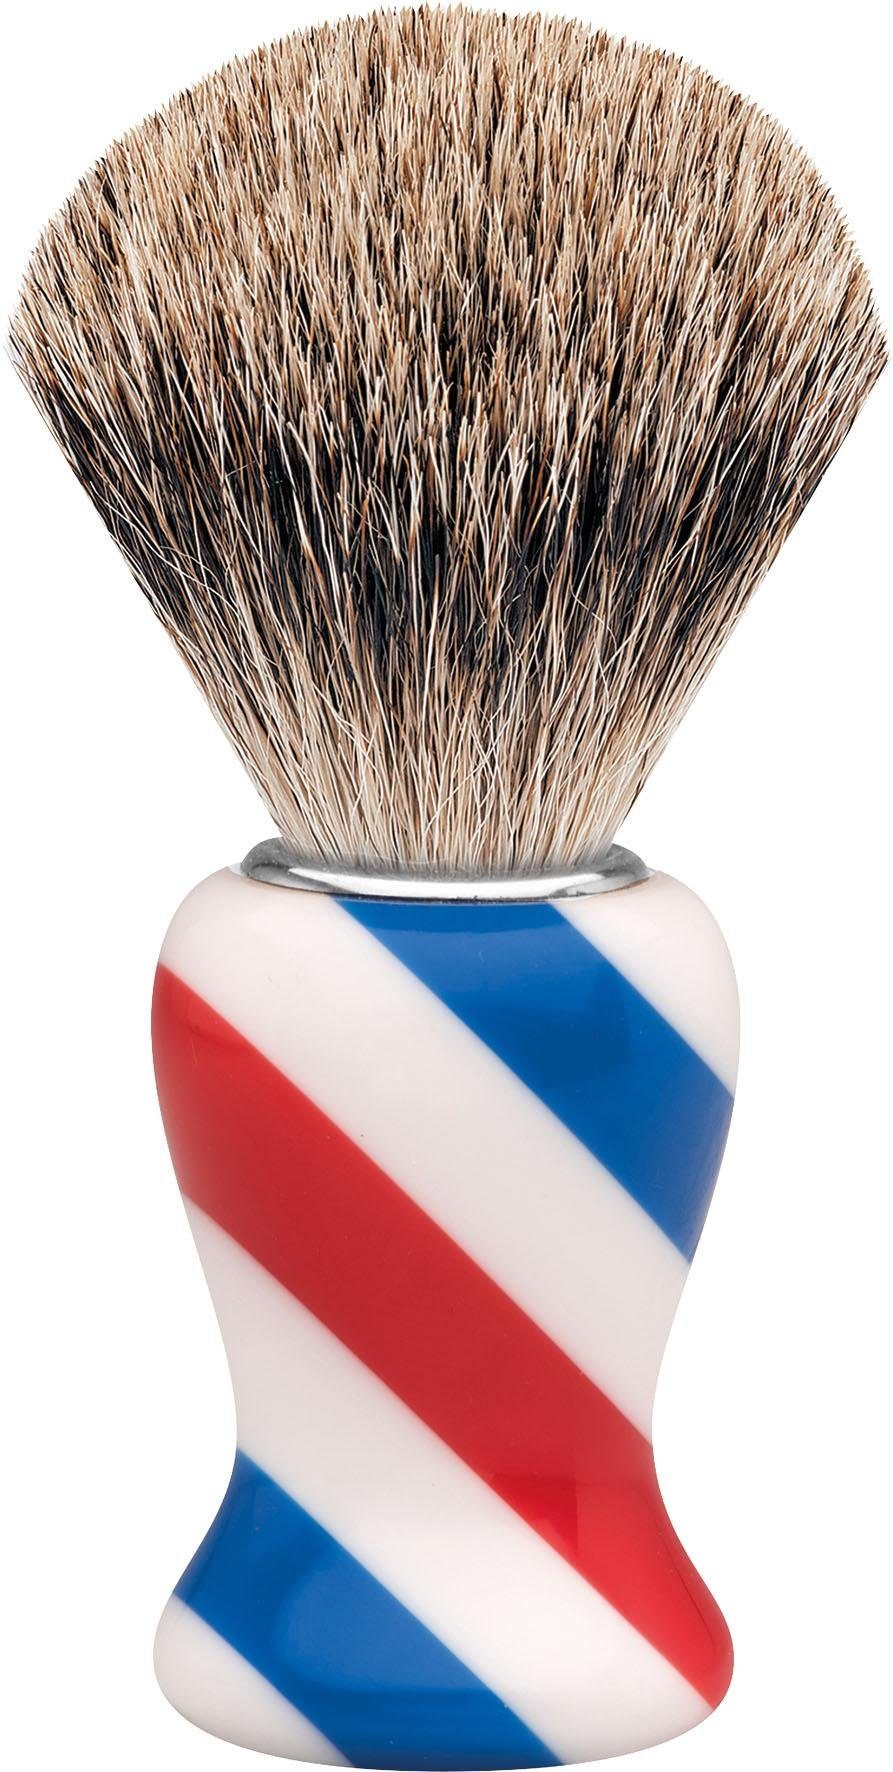 ERBE Rasierpinsel Dachshaar, Barbershop M, Design/Stripes